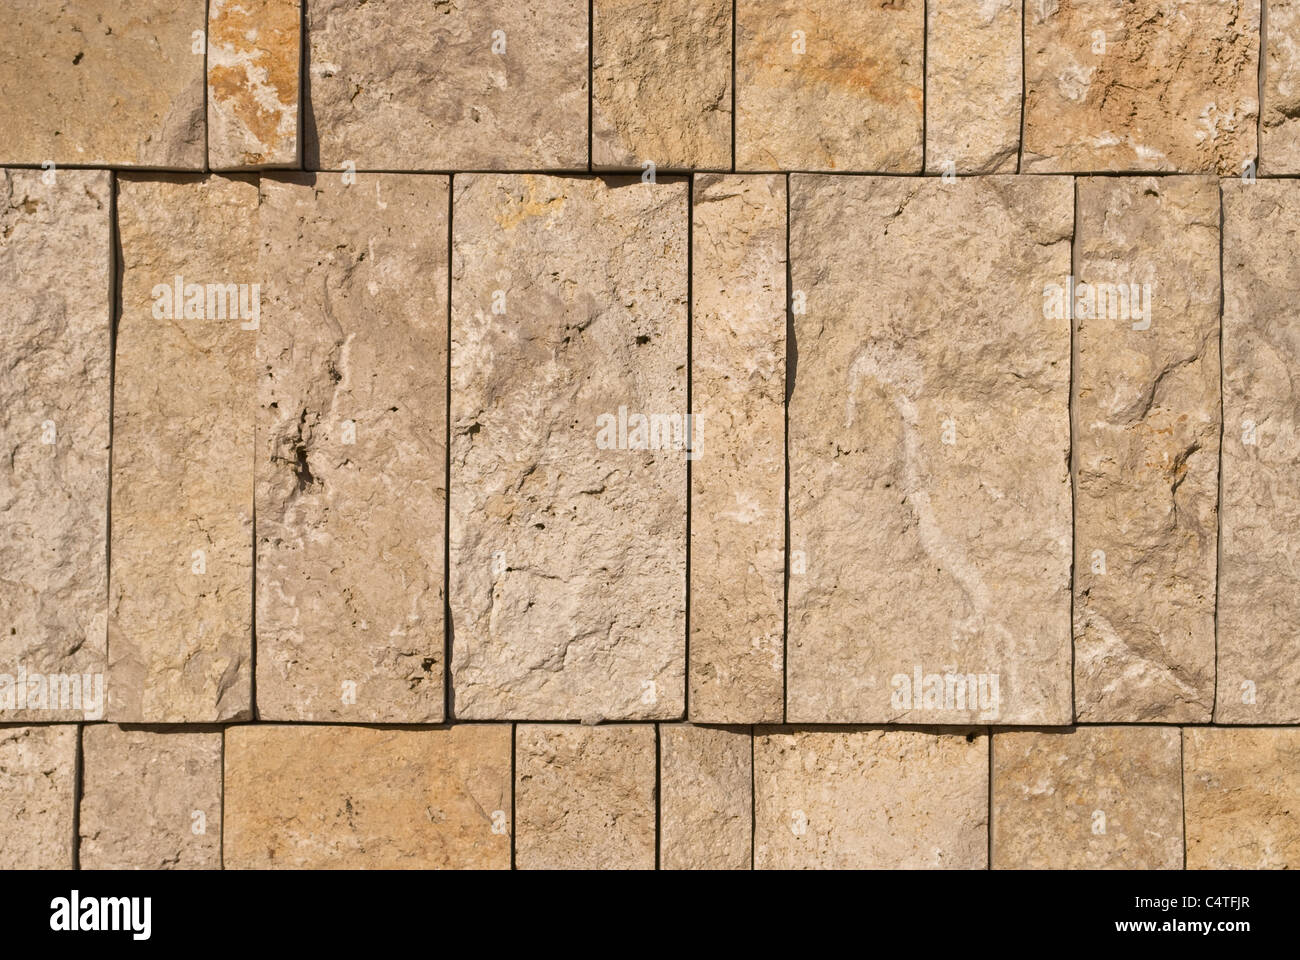 Muro de piedra como una característica arquitectónica textural Foto de stock